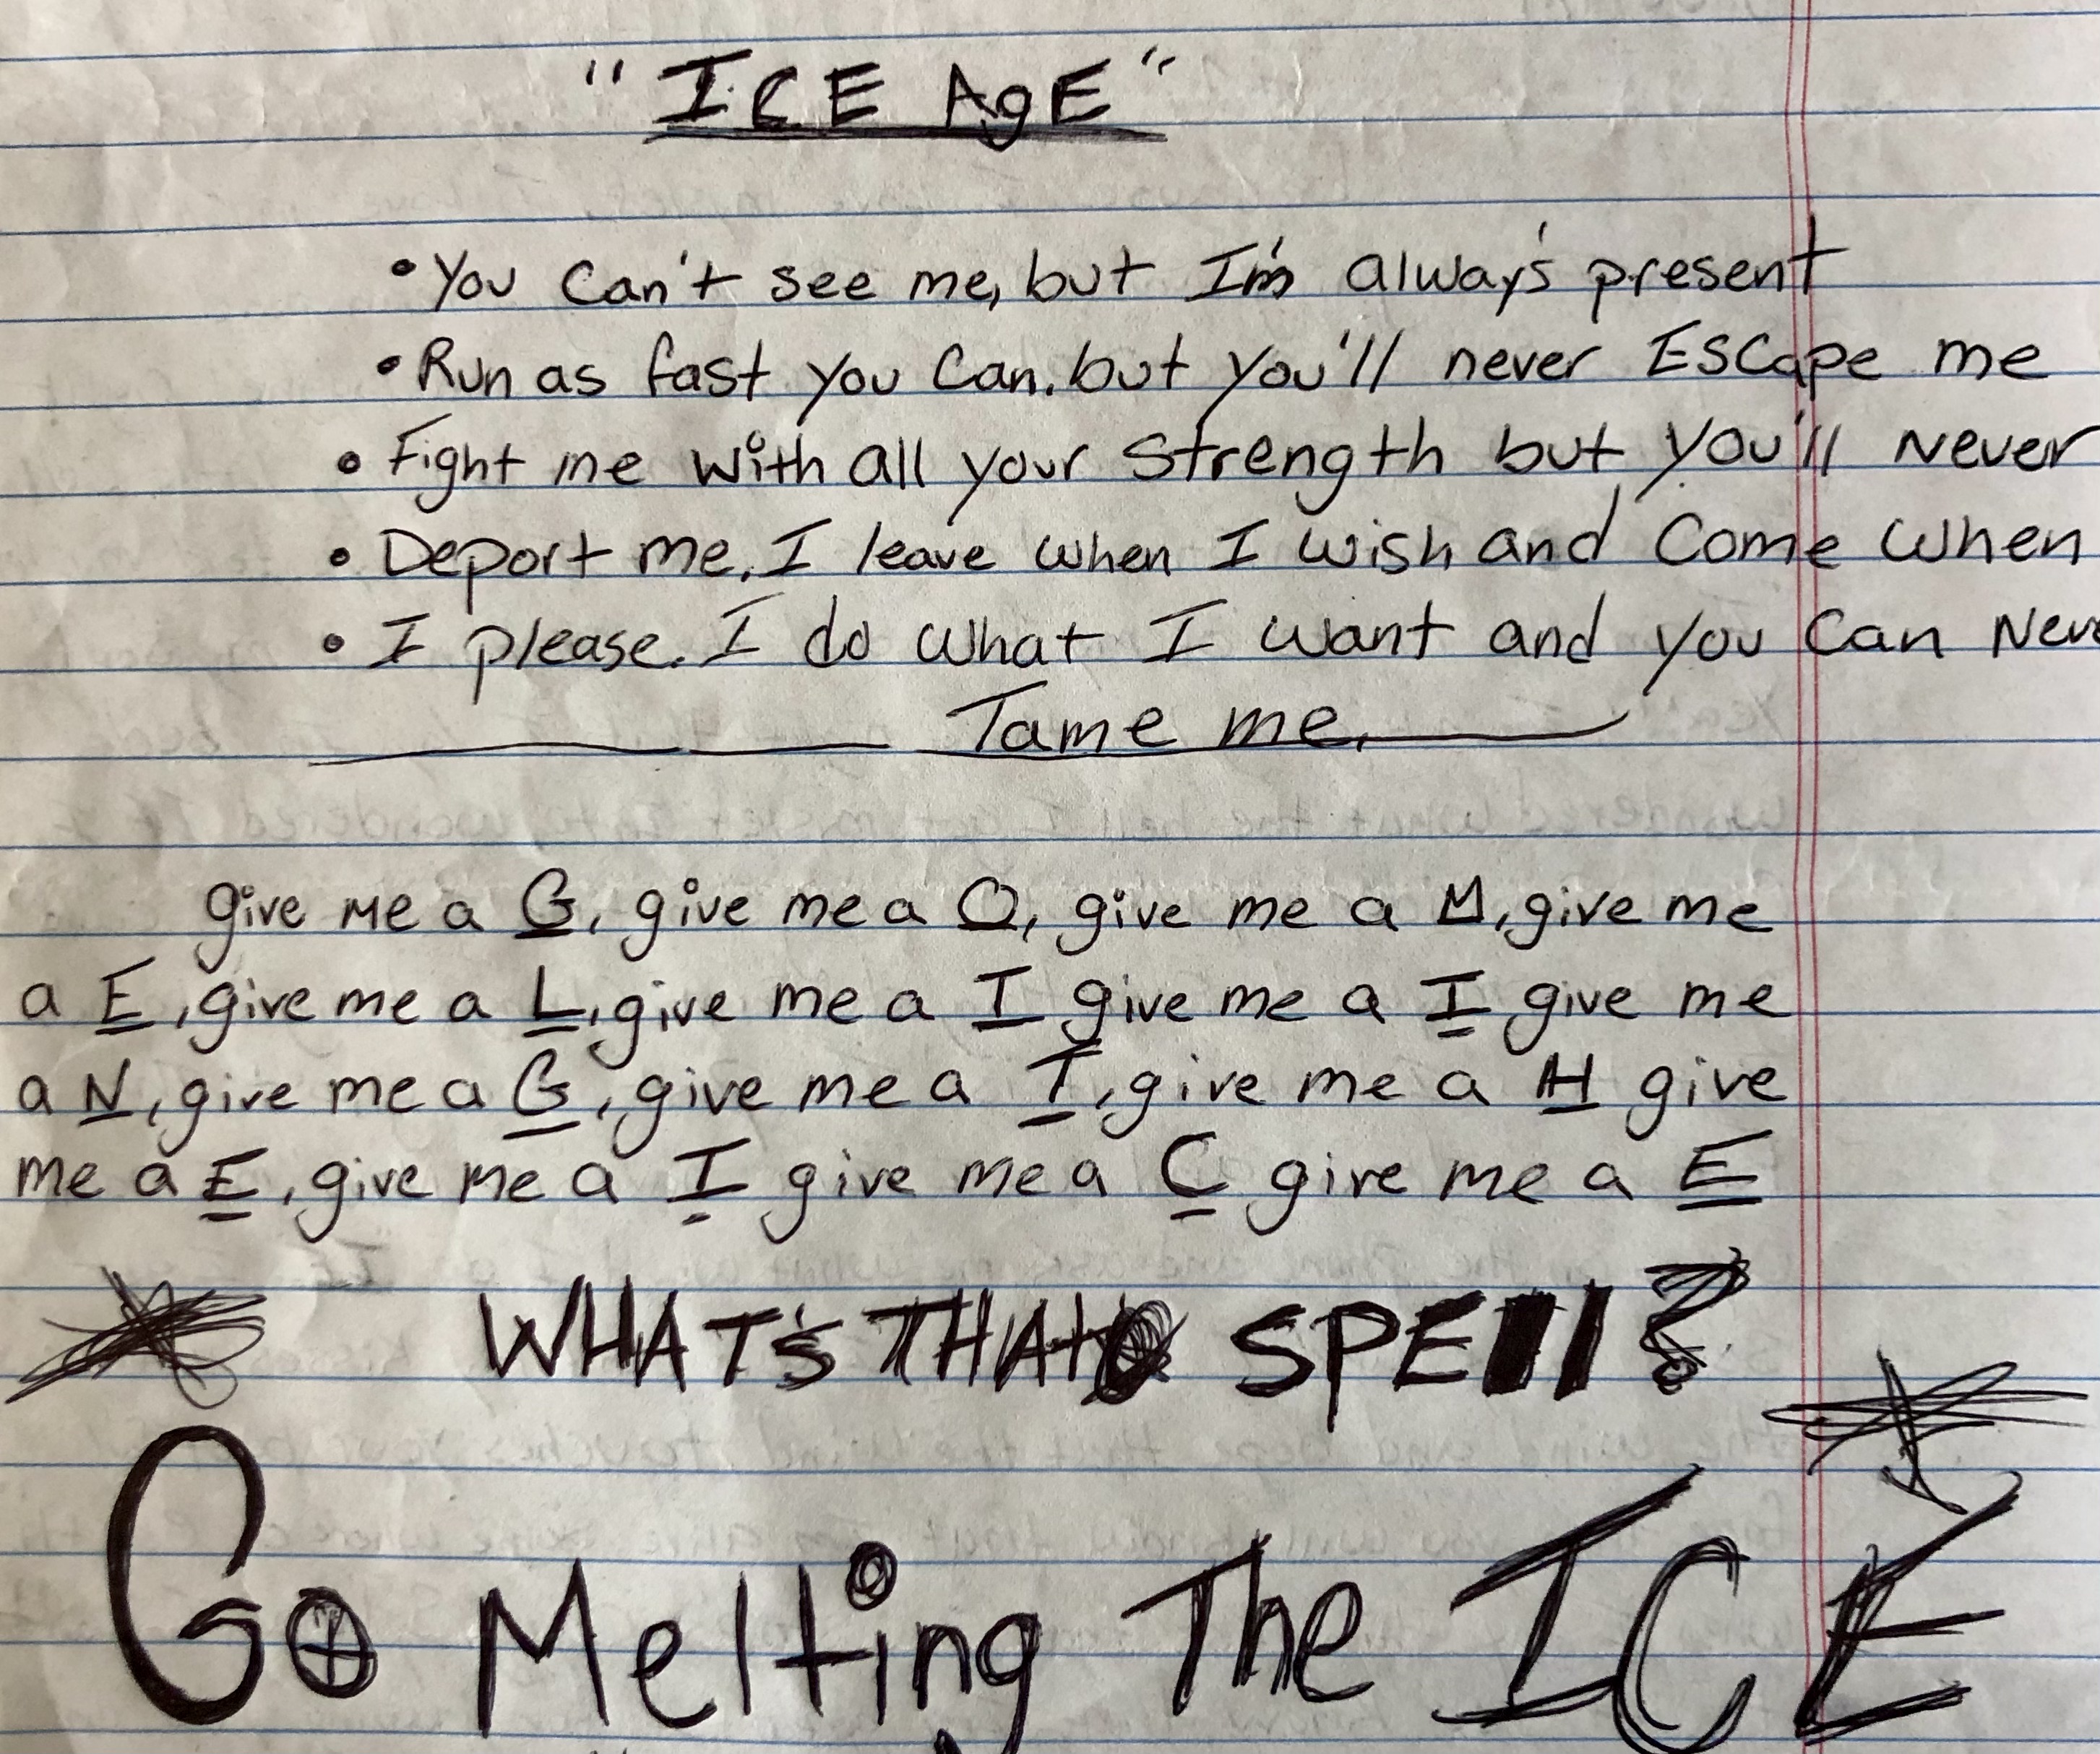 poem written by Jose, written on lined notebook paper. Transcript in caption